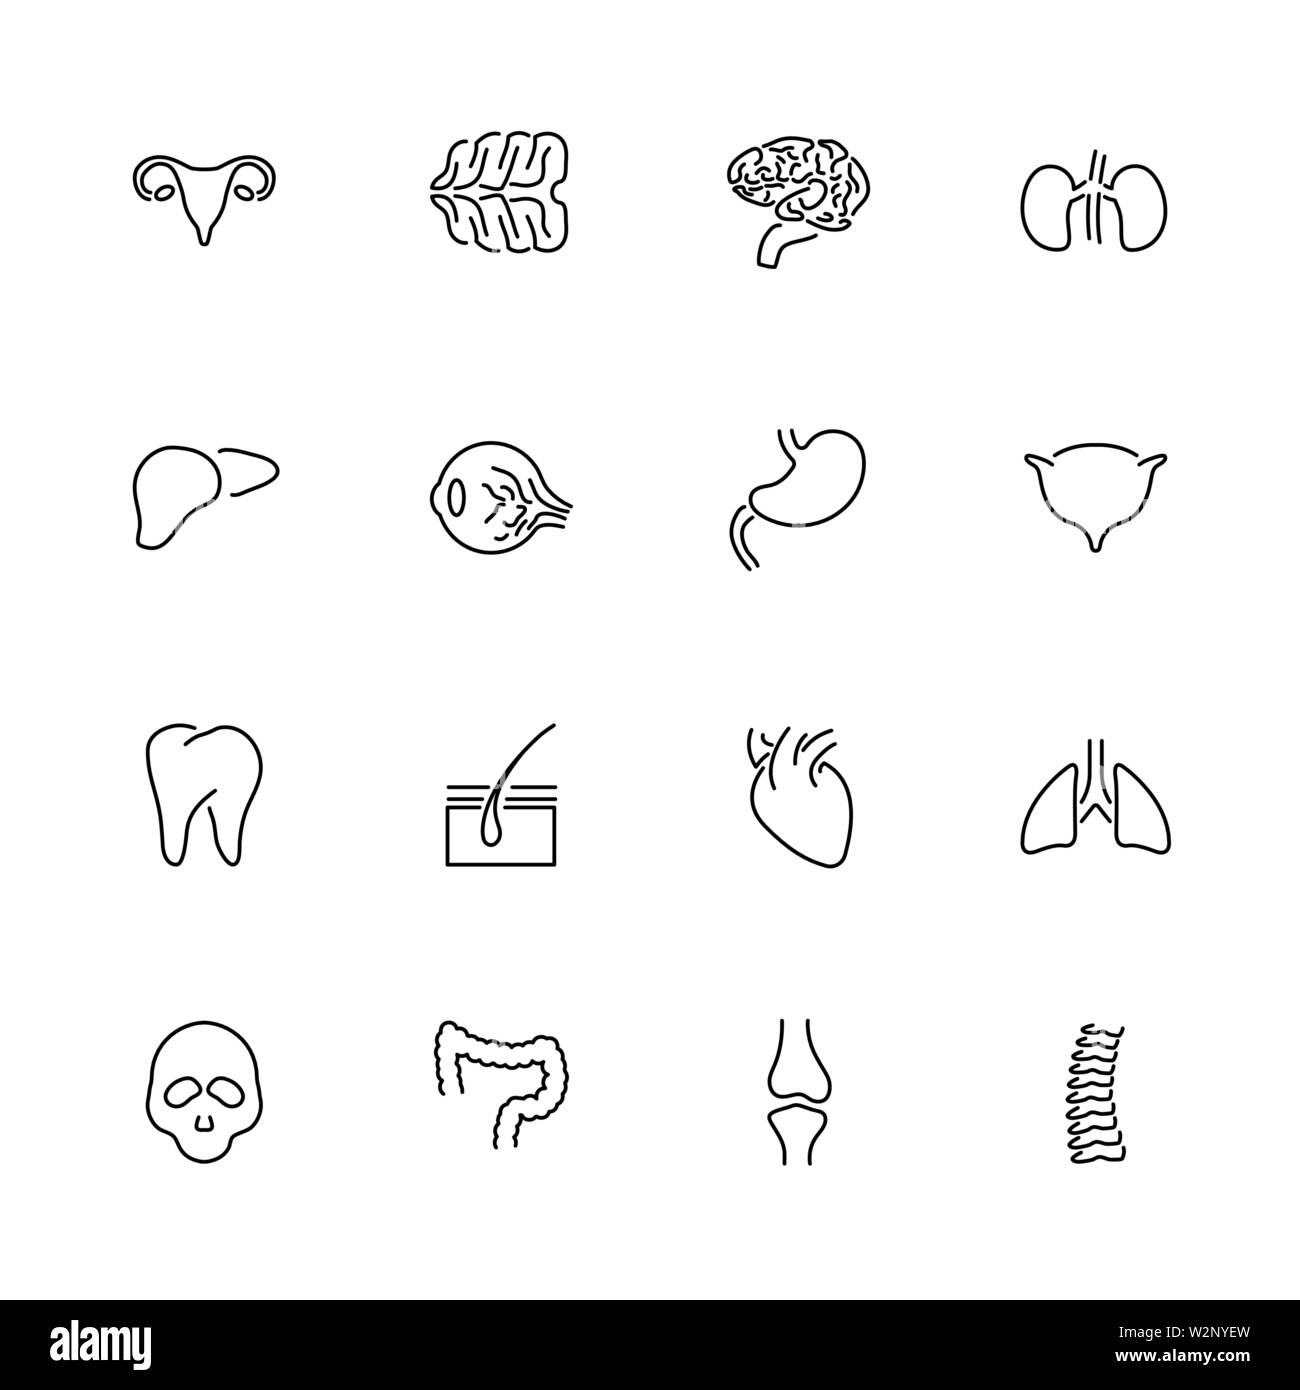 Gli organi umani, trapianto outline set di icone - simbolo nero su sfondo bianco. Gli organi umani illustrazione semplice simbolo - rivestiti di semplicità di segno. F Illustrazione Vettoriale